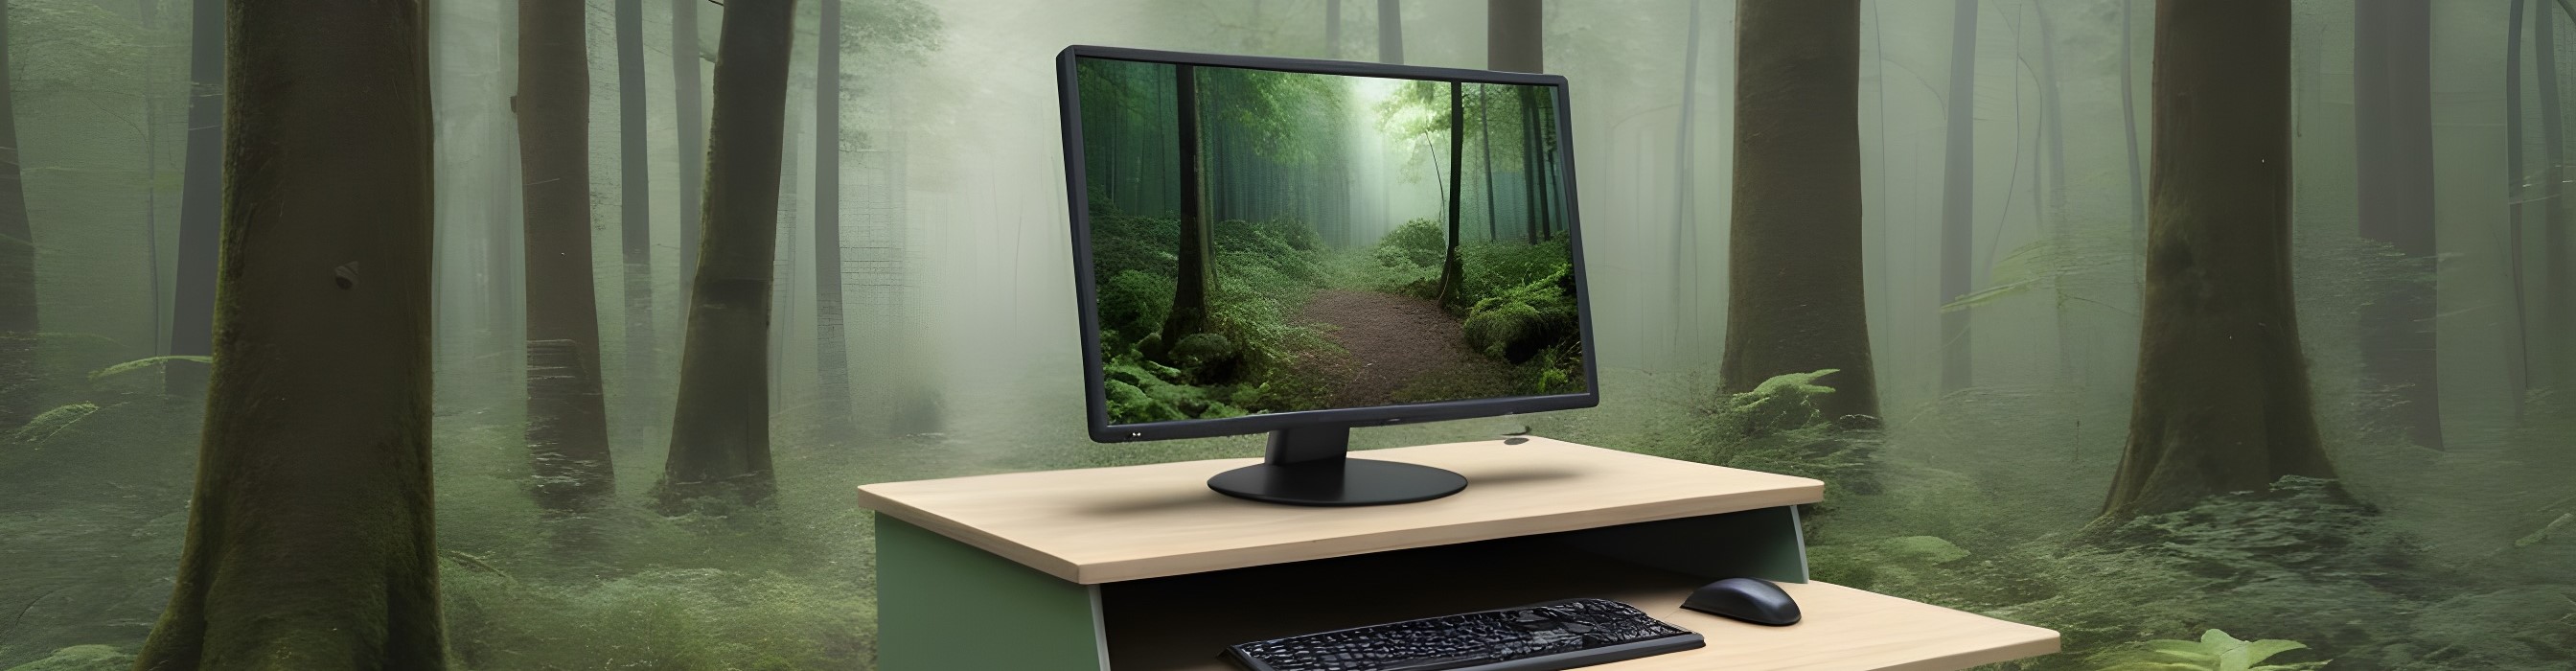 ein-computerbildschirm-zeigt-einen-rollstuhl-und-einen-ausschnitt-vom-regenwald_header.jpg